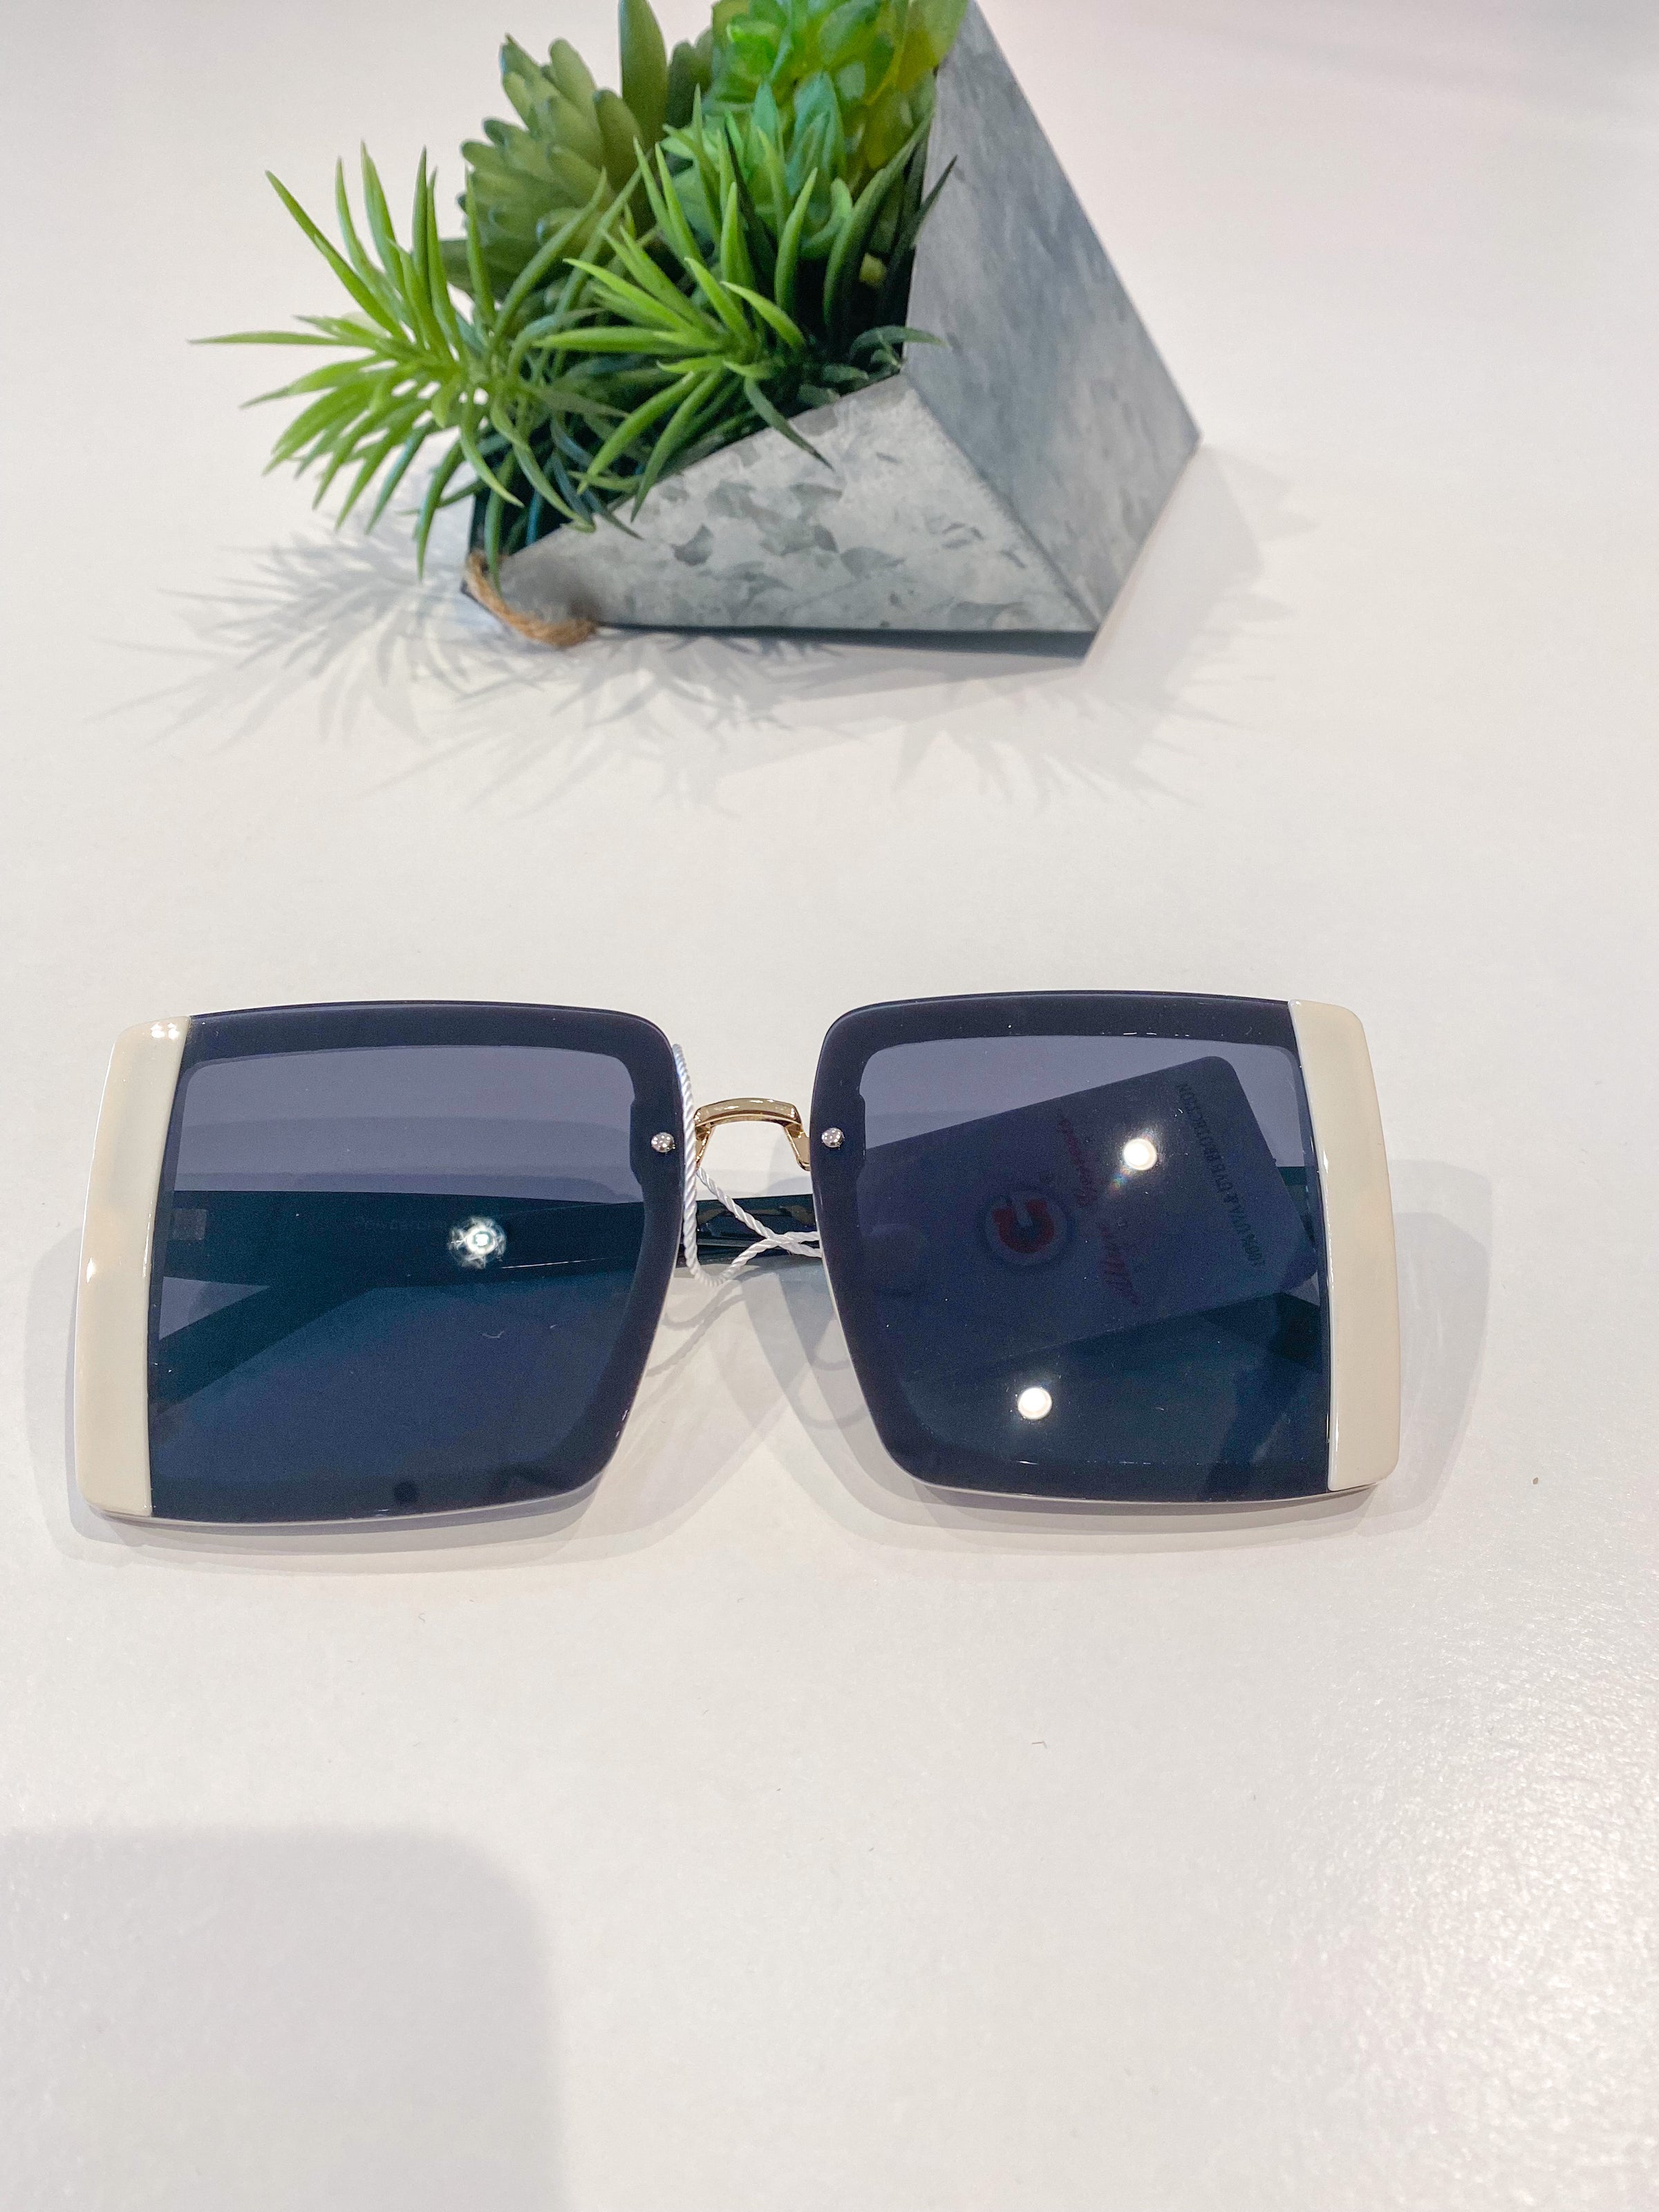 Fashionable - Aruba Sunglasses: The aruba sunglasses in... | فيسبوك